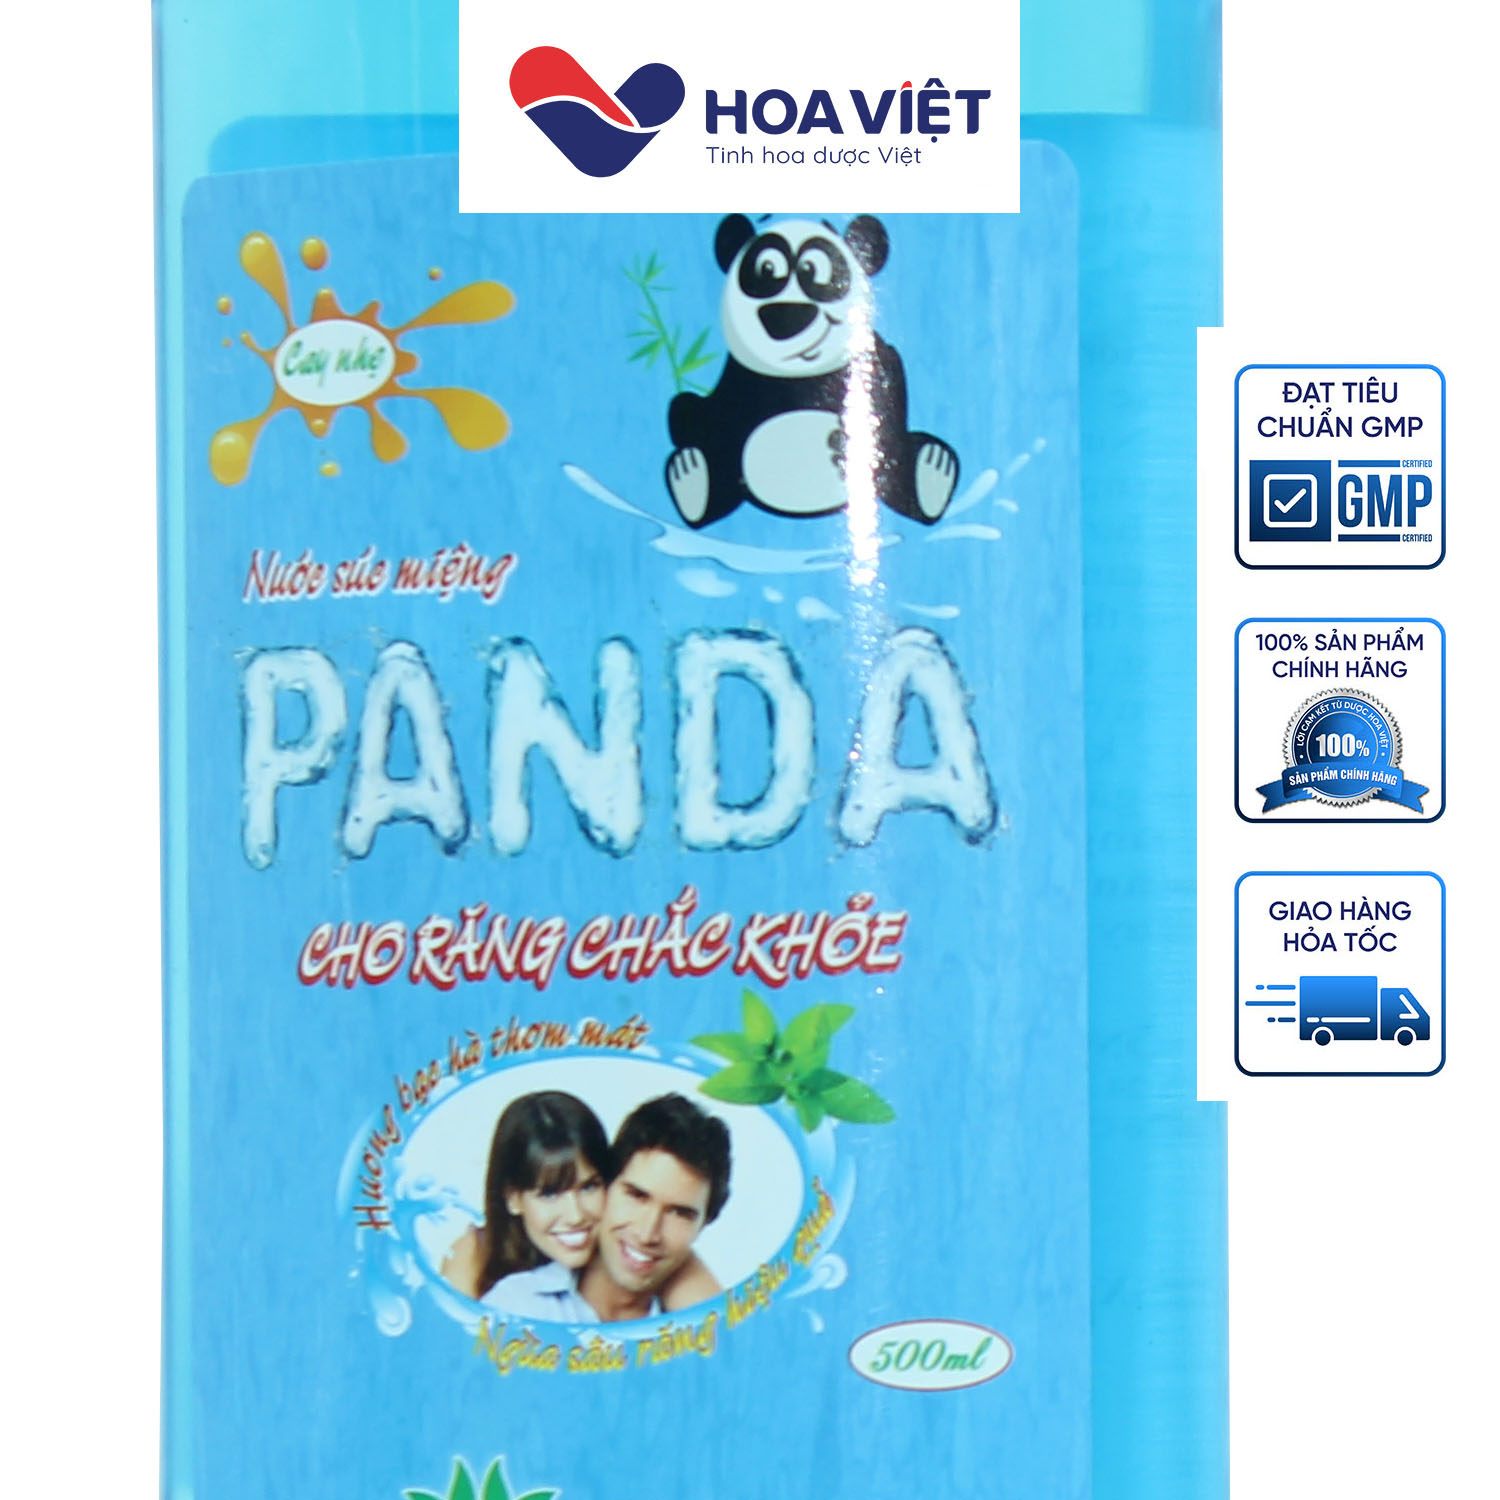 Nước súc miệng Panda giúp khử sạch mùi hôi, giữ hơi thở thơm mát